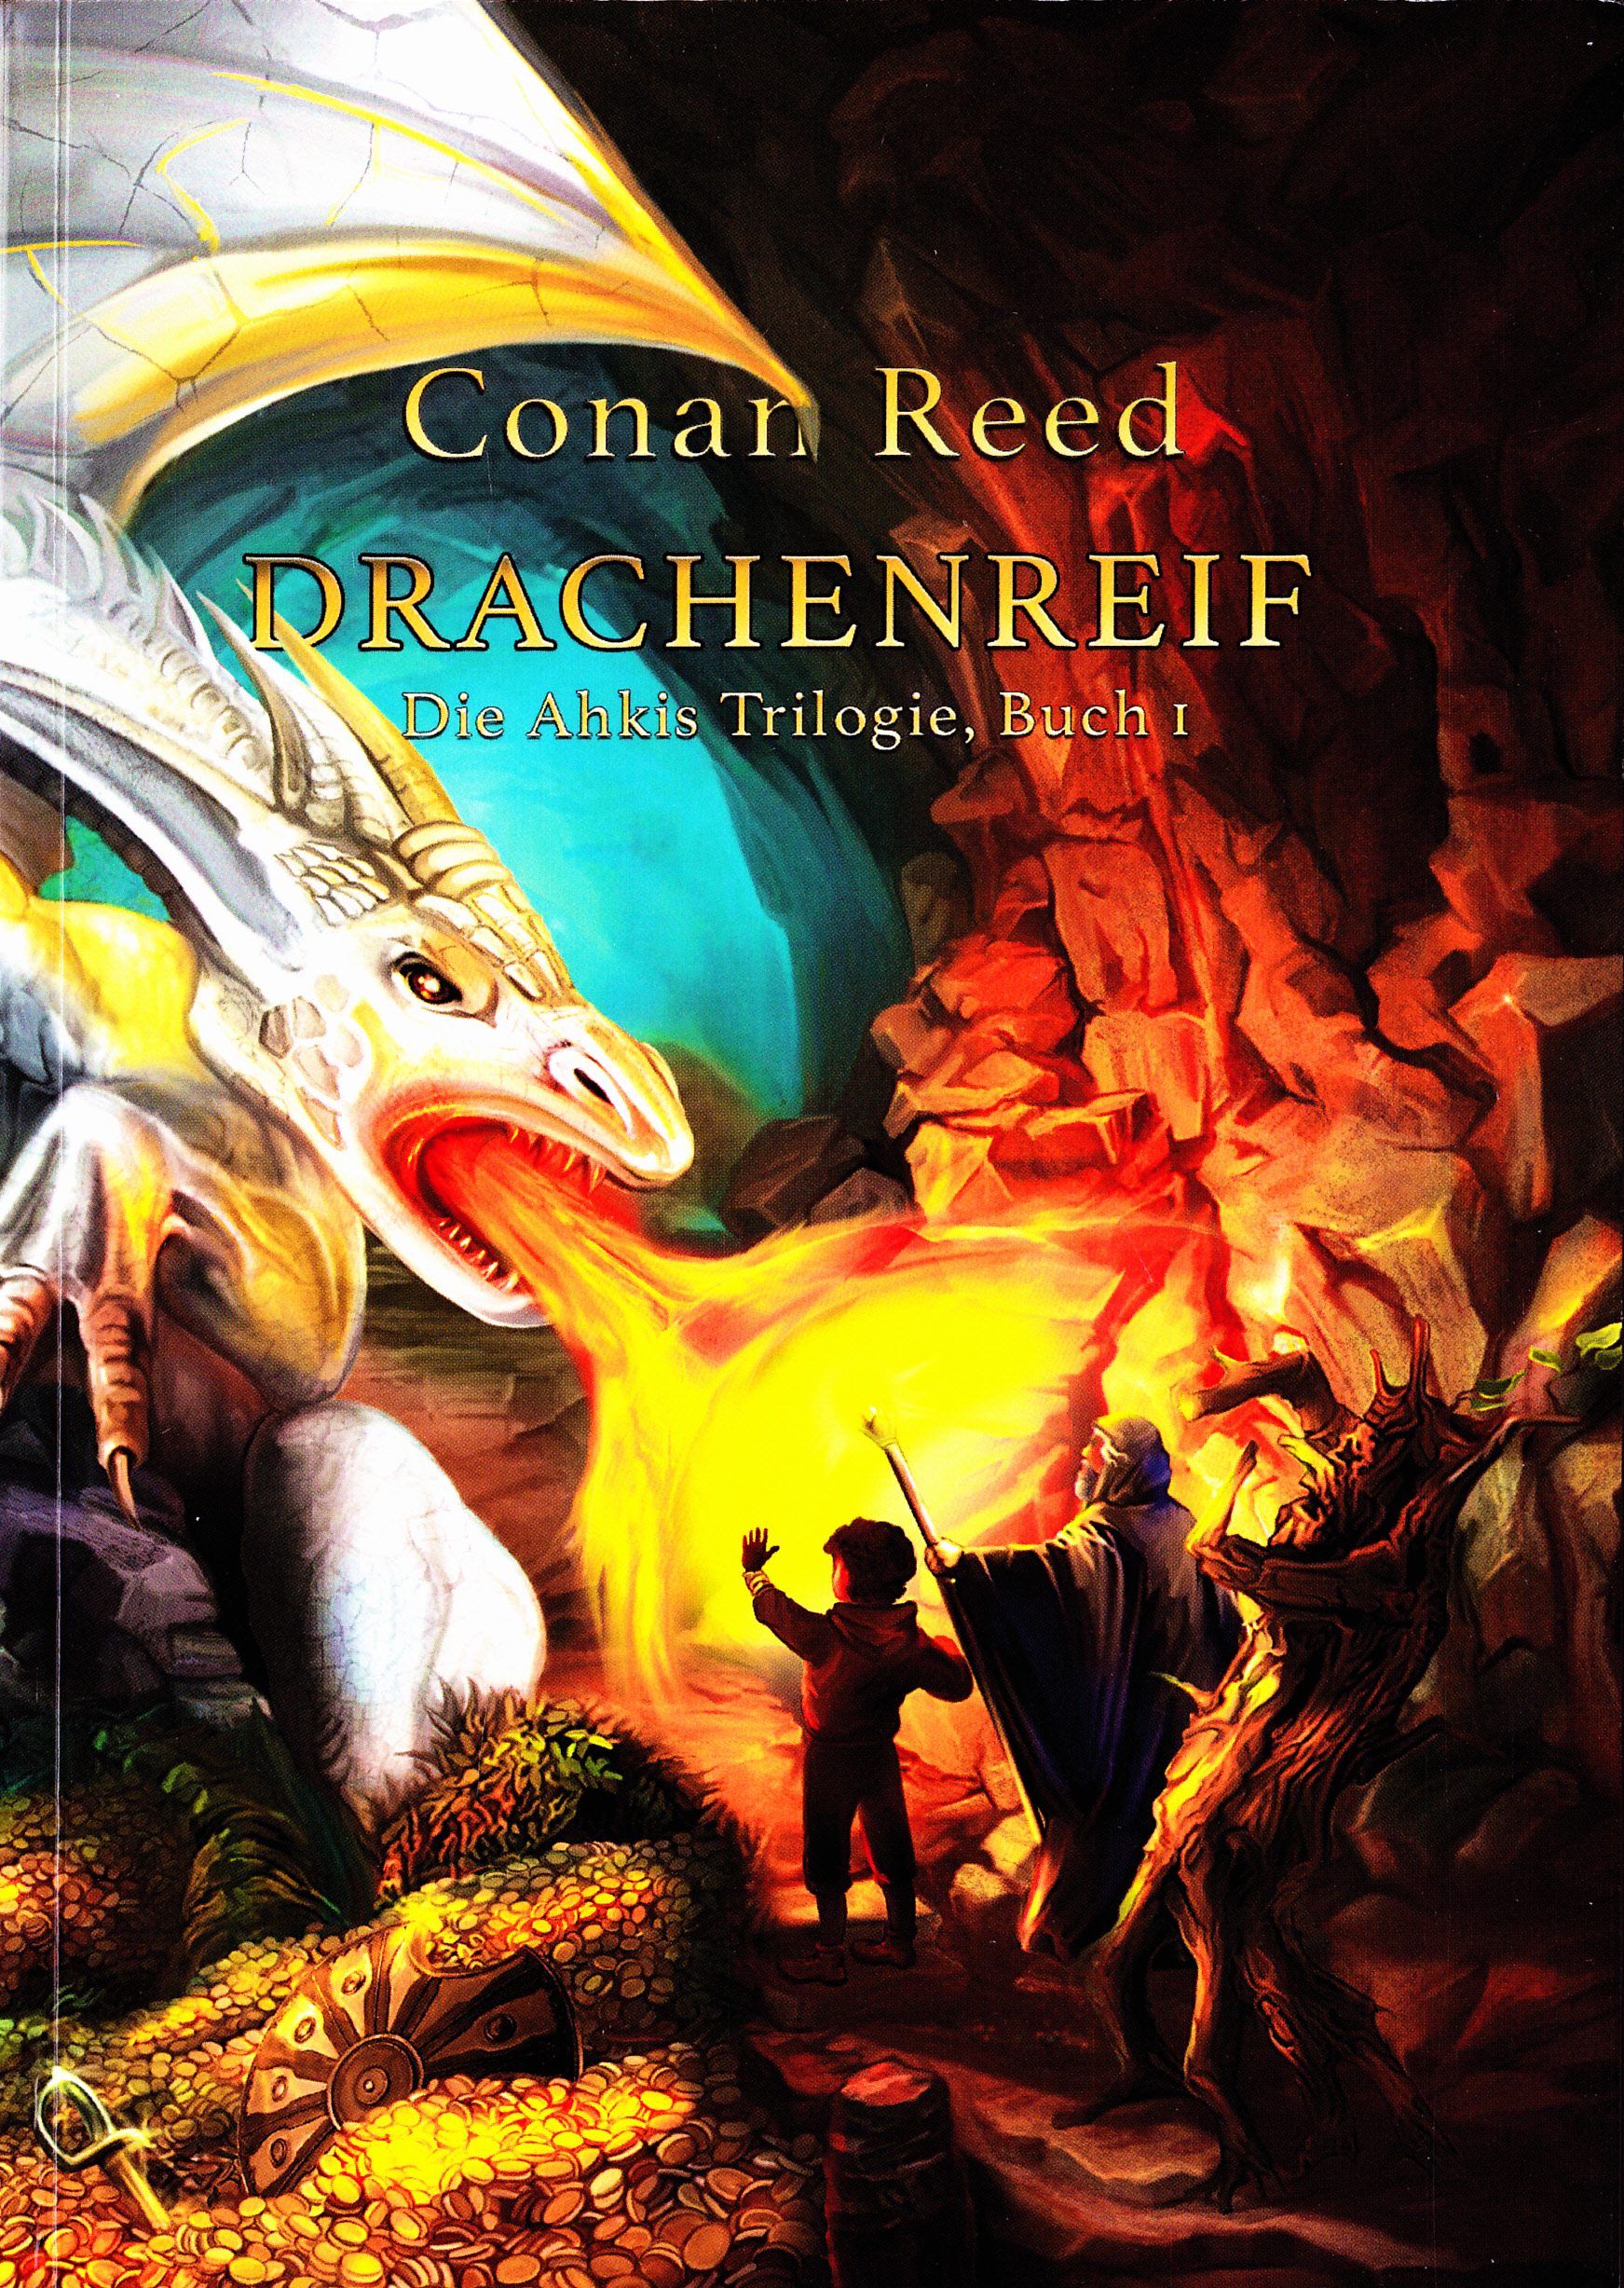 Drachenreif. Die Ahkis Trilogie, Buch I - Conan Reed